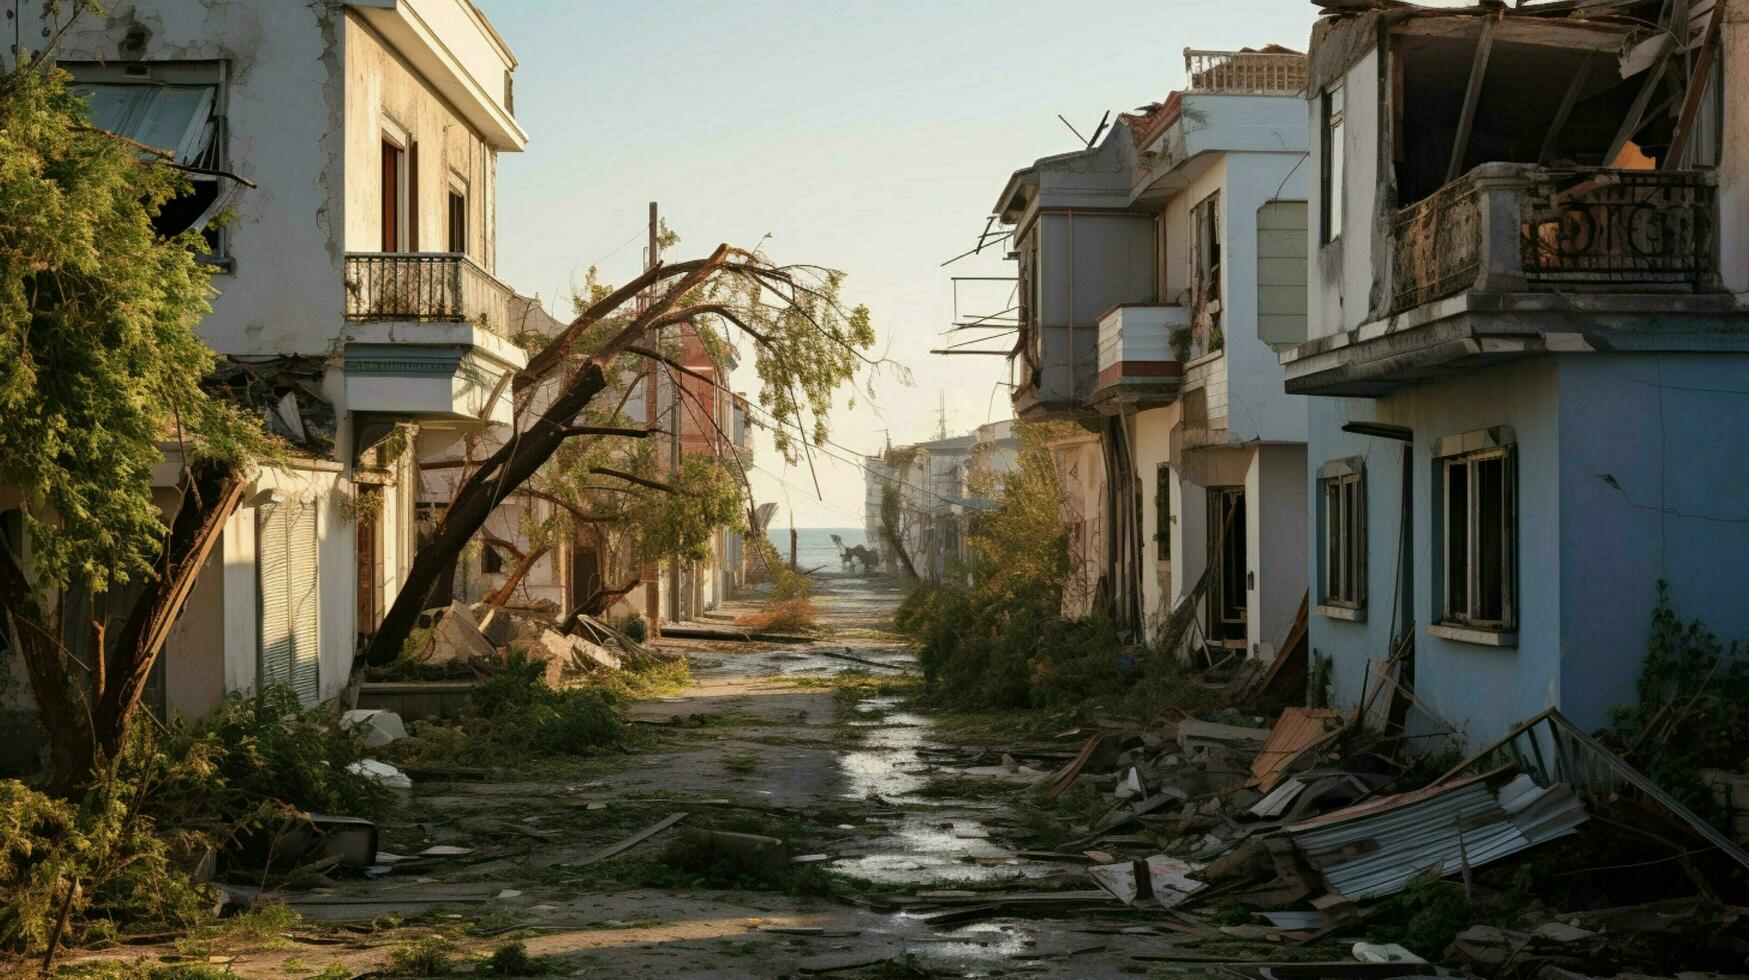 arruinado casas y arboles después secuelas huracán foto